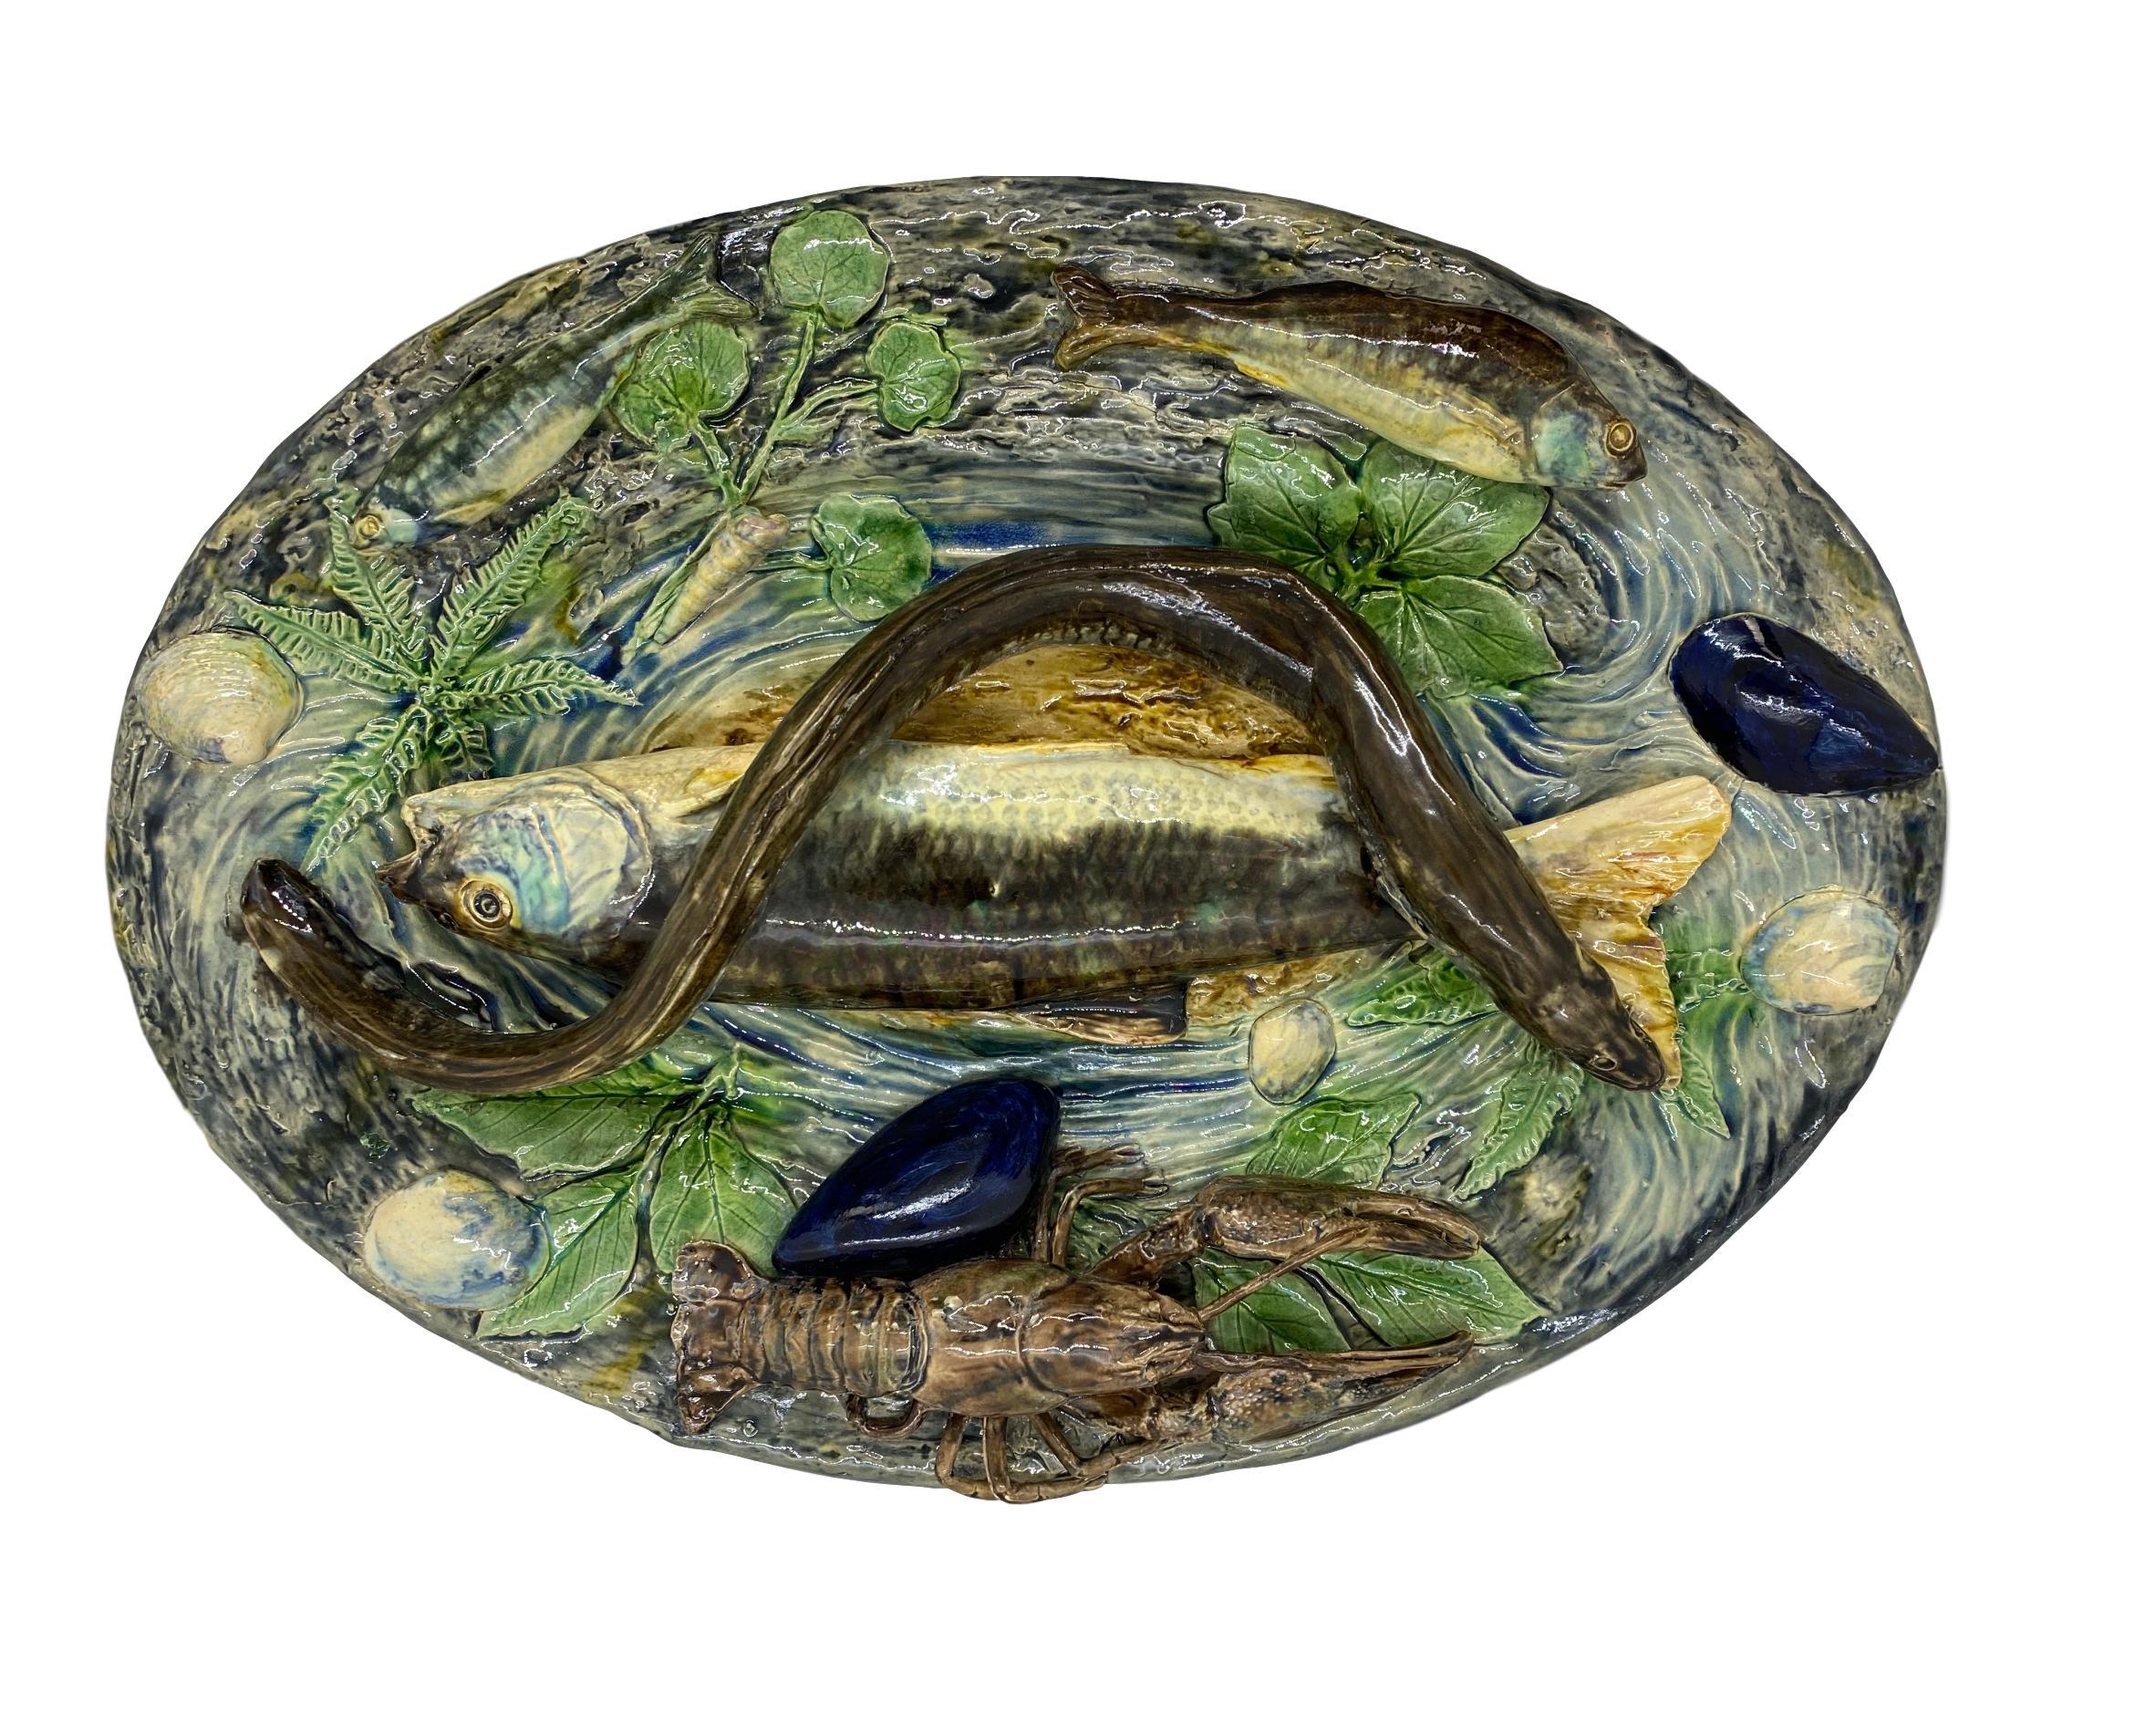 Große Plalissy-Majolika-Trompe-l'oeil-Platte von Alfred Renoleau (Französisch 1854-1930), um 1885.
Naturalistisch geformt und appliziert mit einem großen Fisch und Aal in der Mitte, einem Hummer und verschiedenen kleineren Fischen am Rand, mit